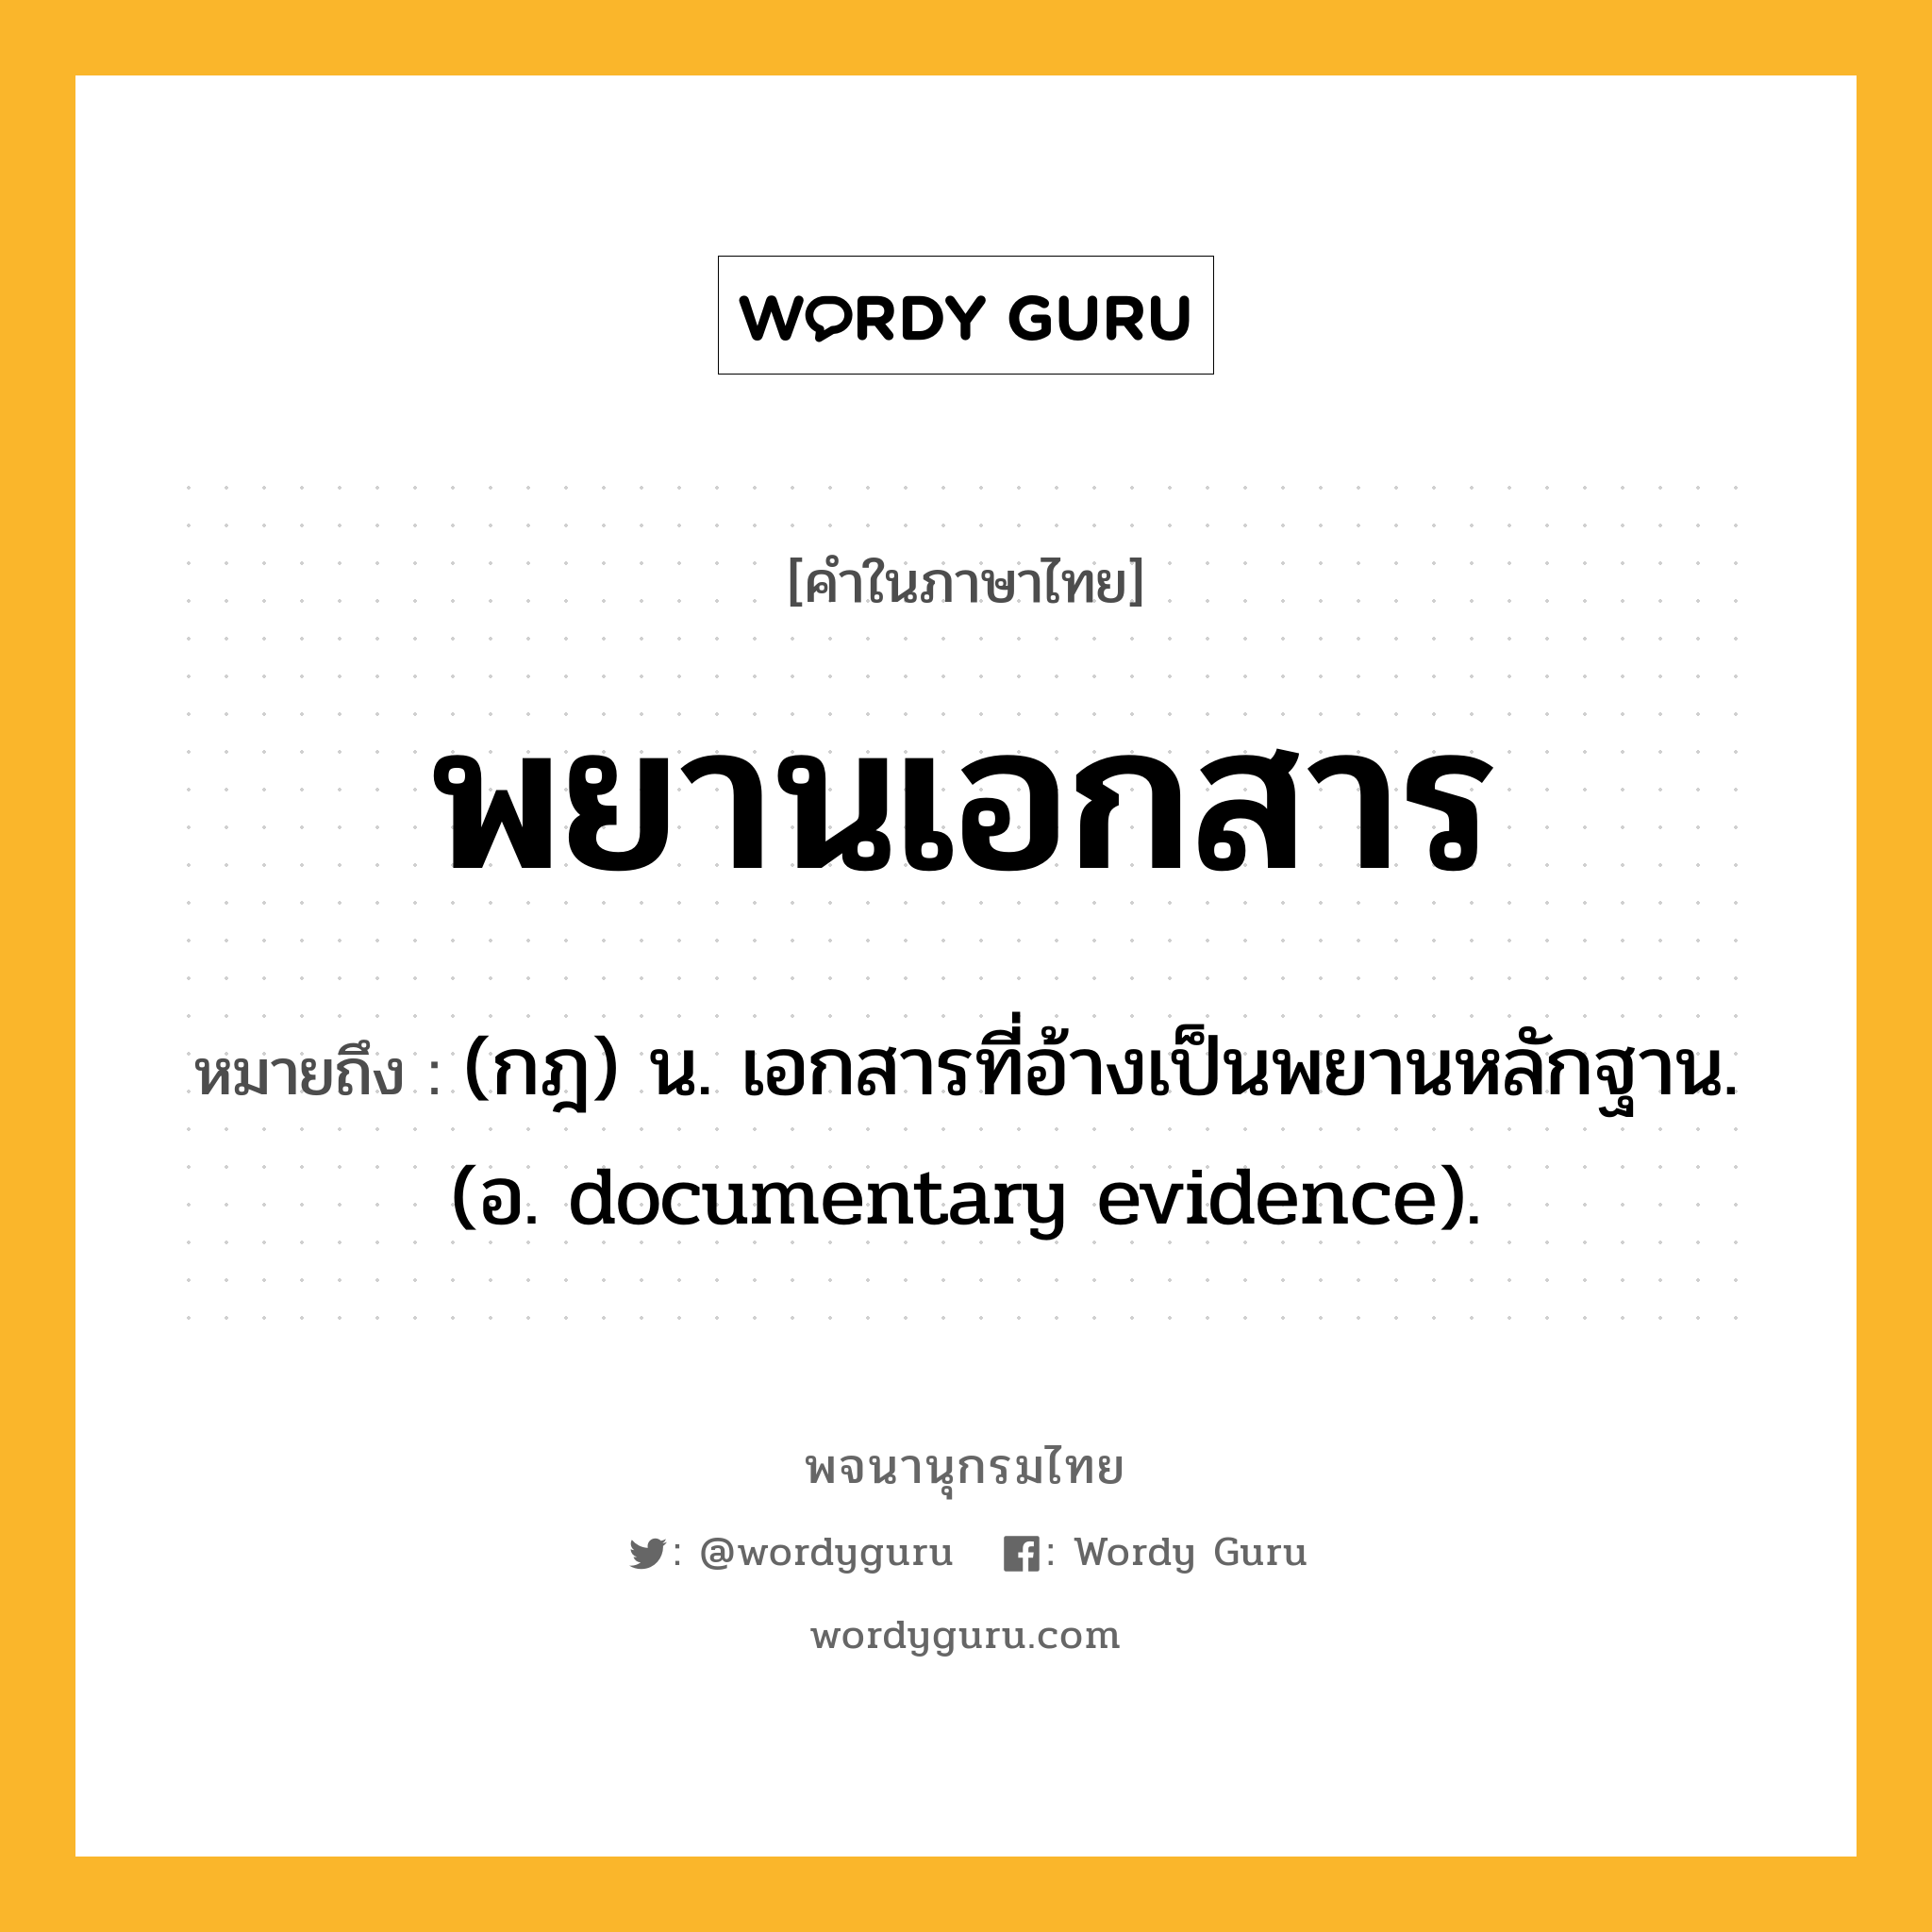 พยานเอกสาร ความหมาย หมายถึงอะไร?, คำในภาษาไทย พยานเอกสาร หมายถึง (กฎ) น. เอกสารที่อ้างเป็นพยานหลักฐาน. (อ. documentary evidence).